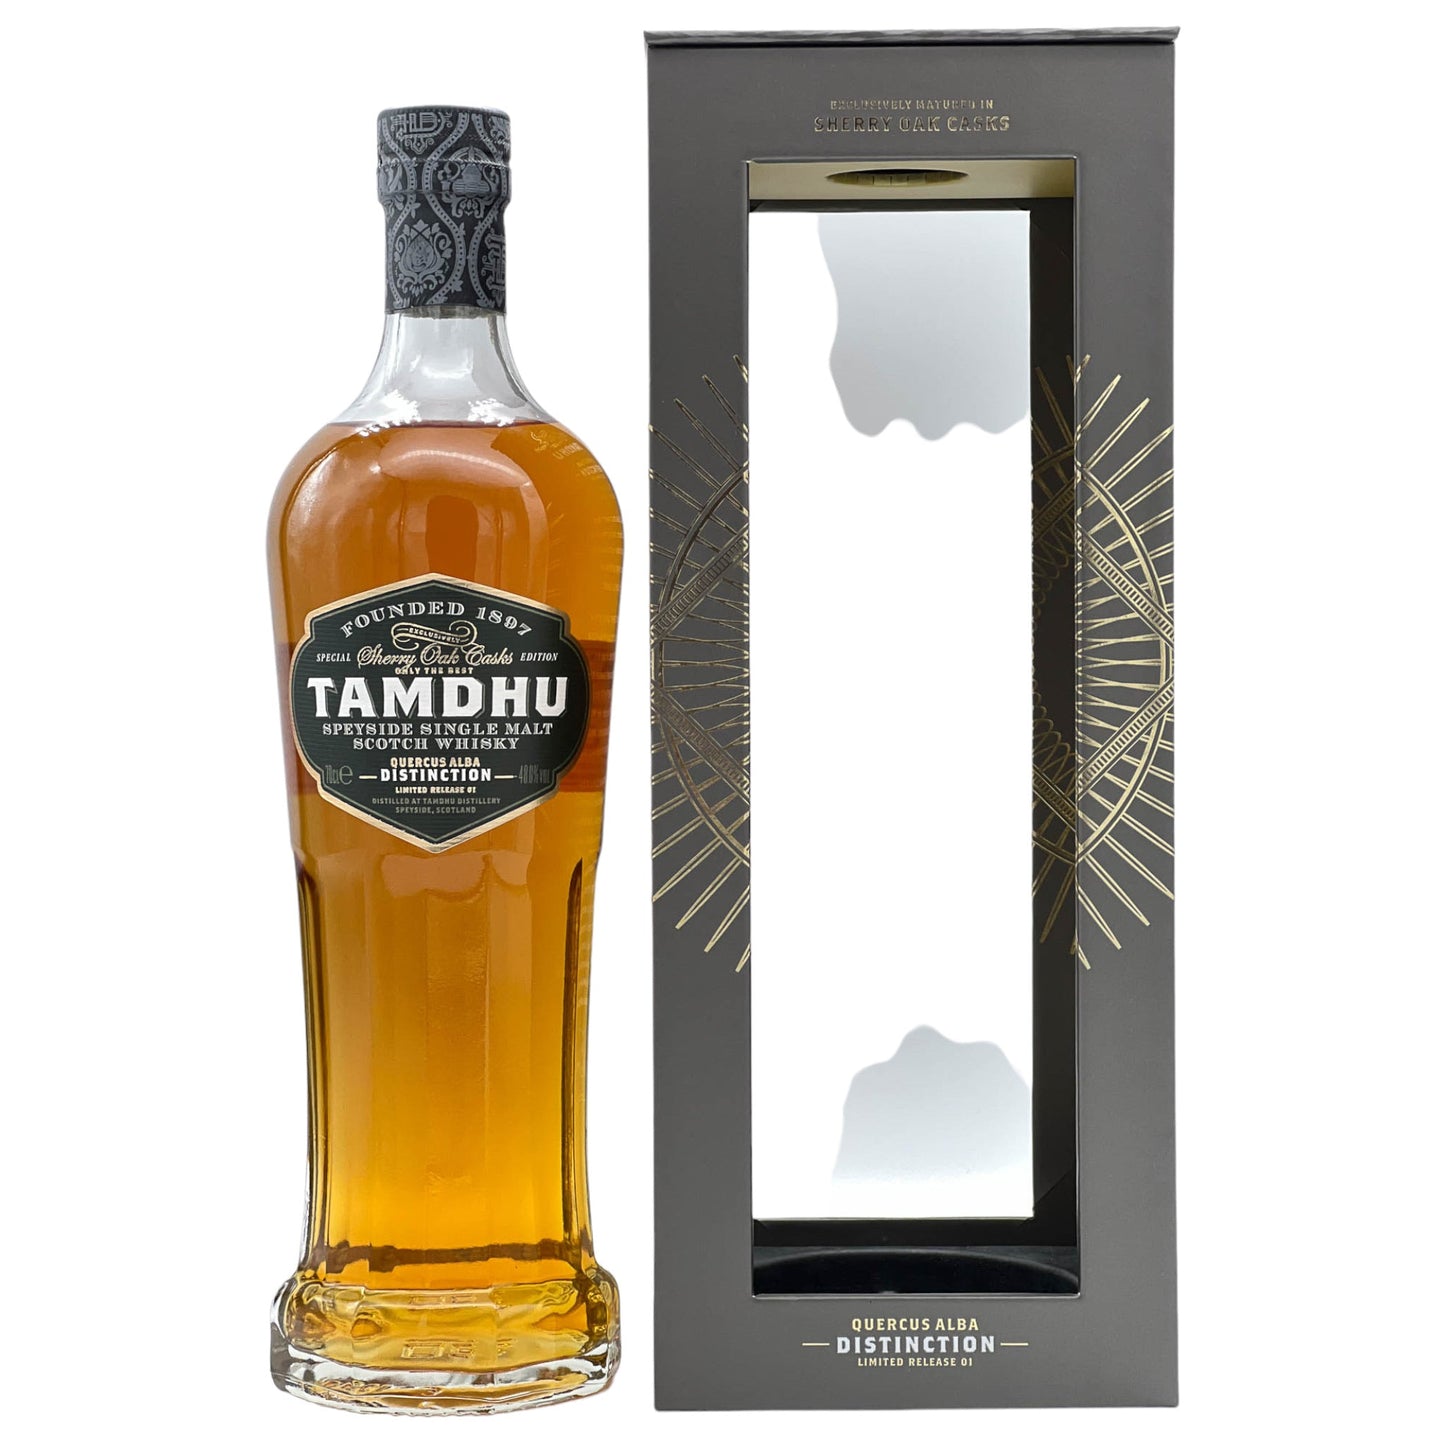 Tamdhu | Distinction | Limited Release 01 | 0,7l | 48%GET A BOTTLE